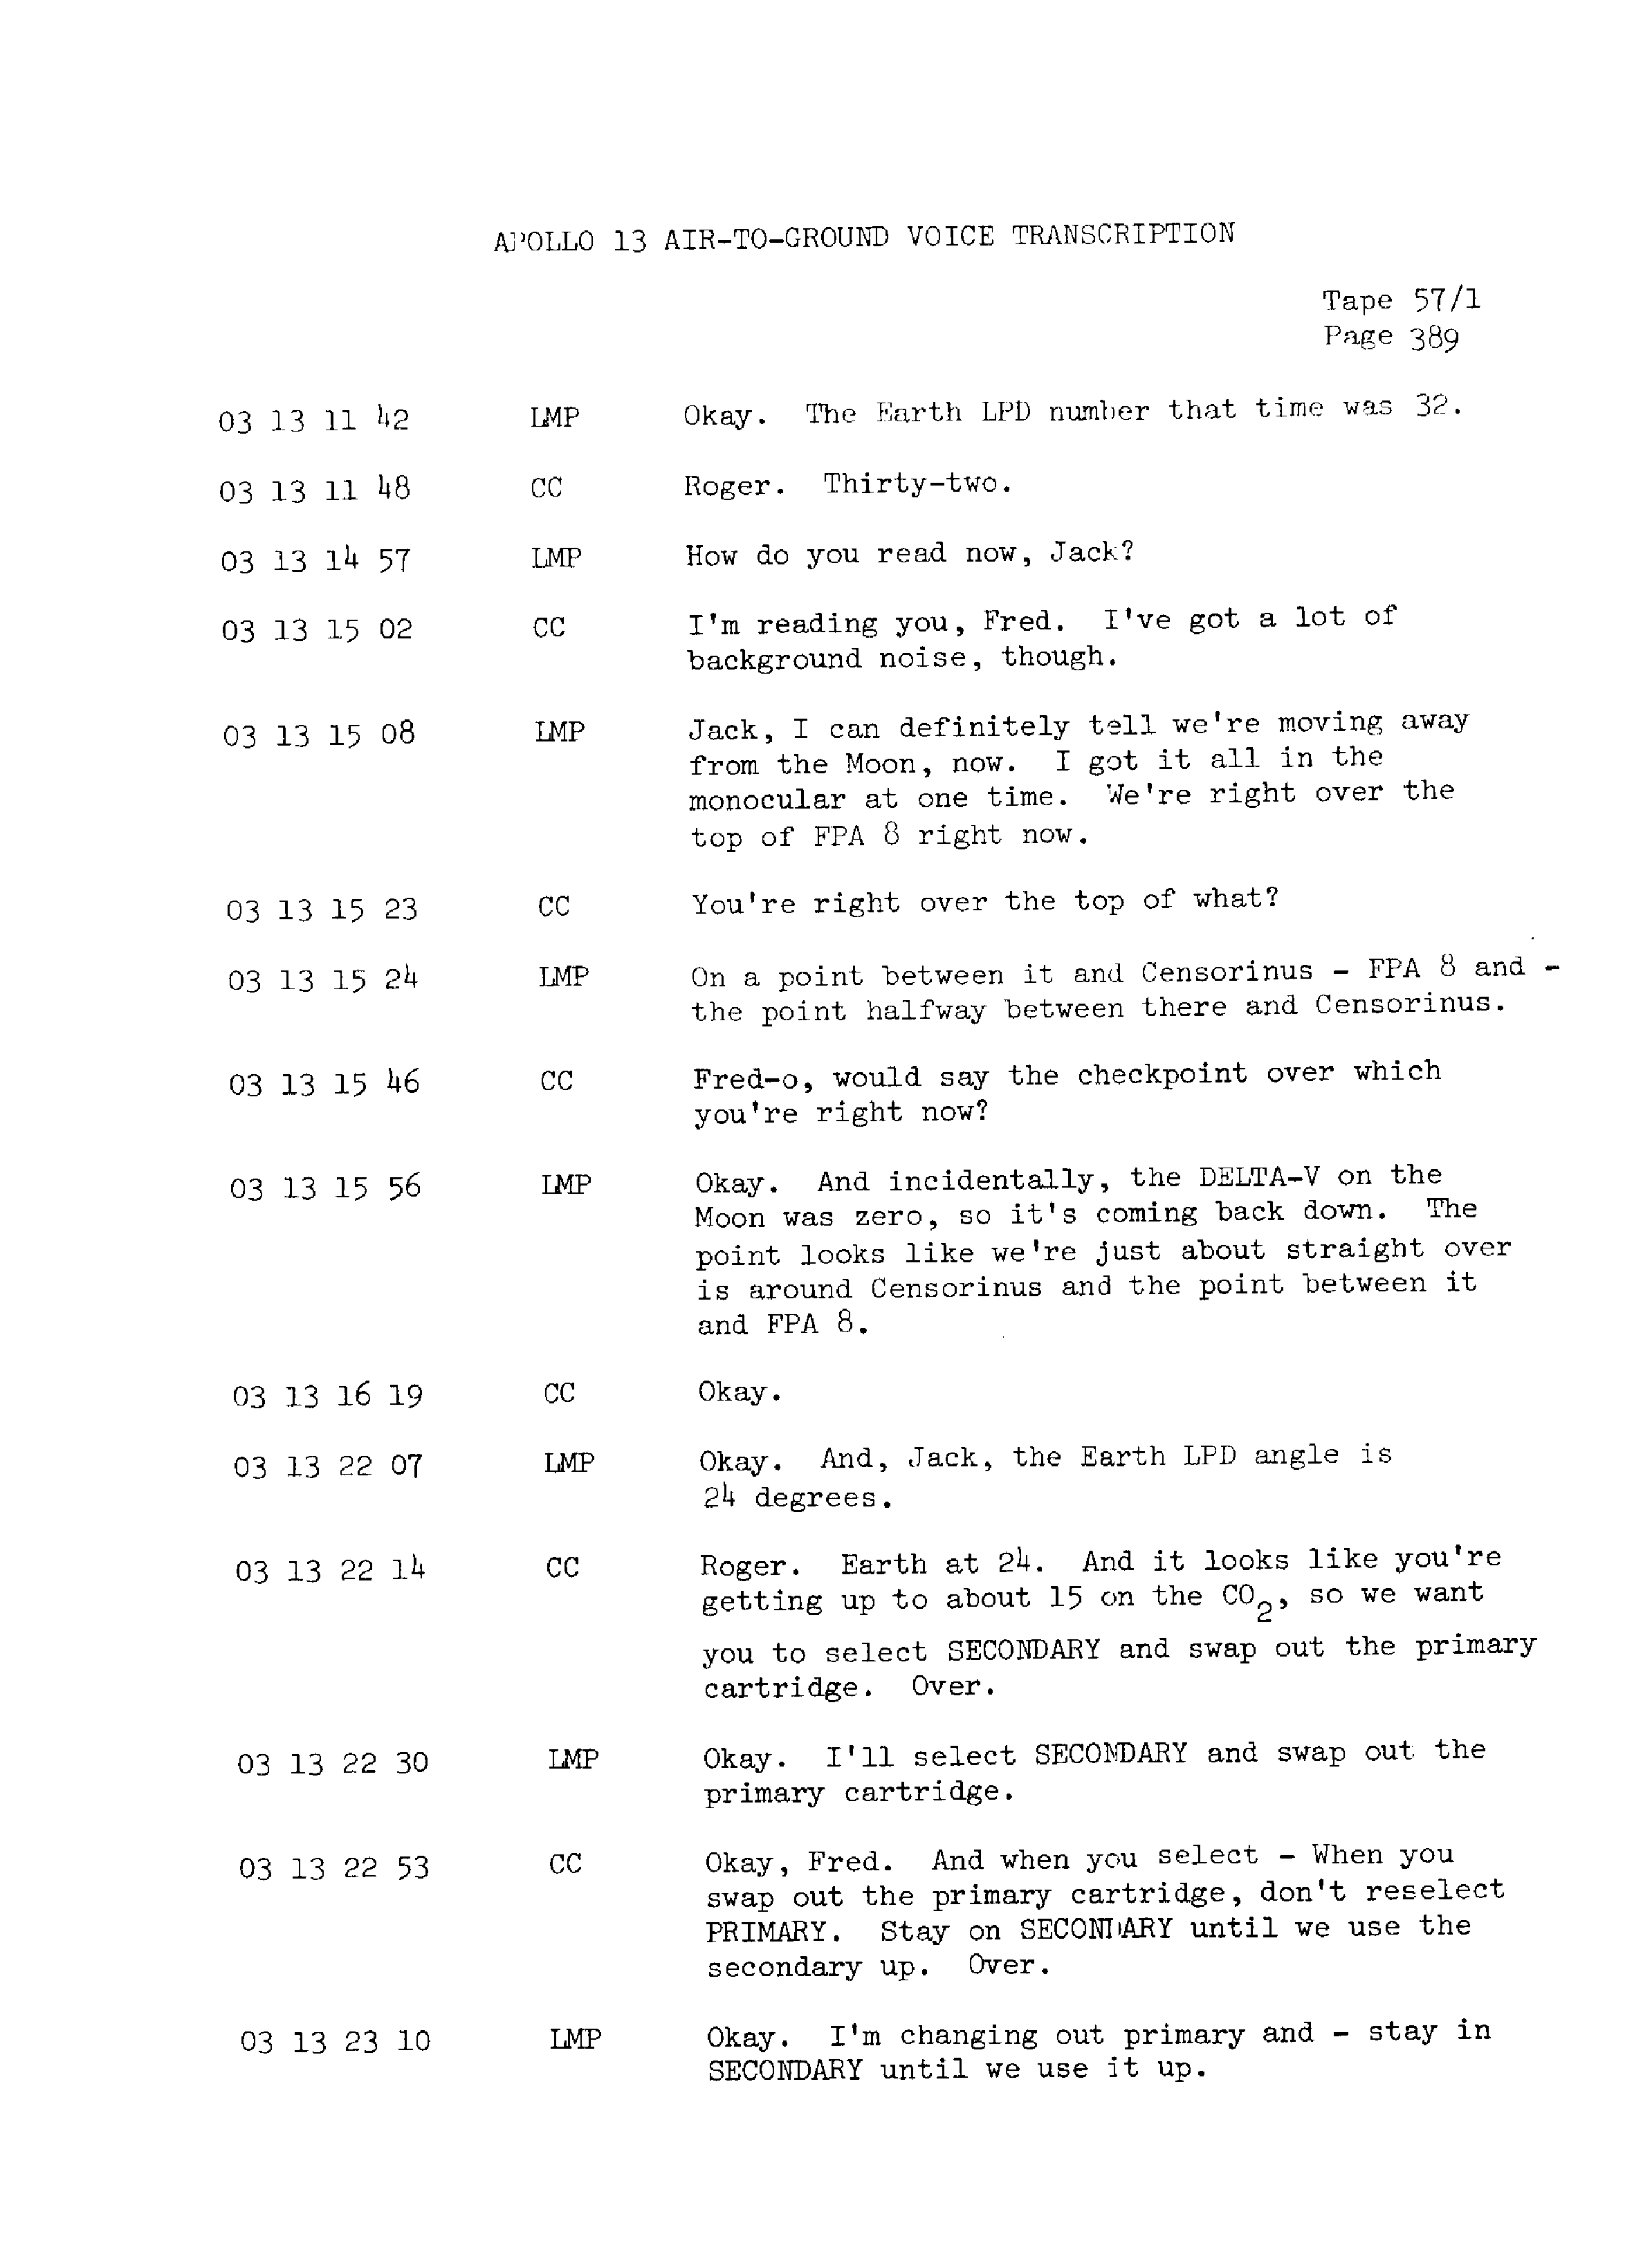 Page 396 of Apollo 13’s original transcript